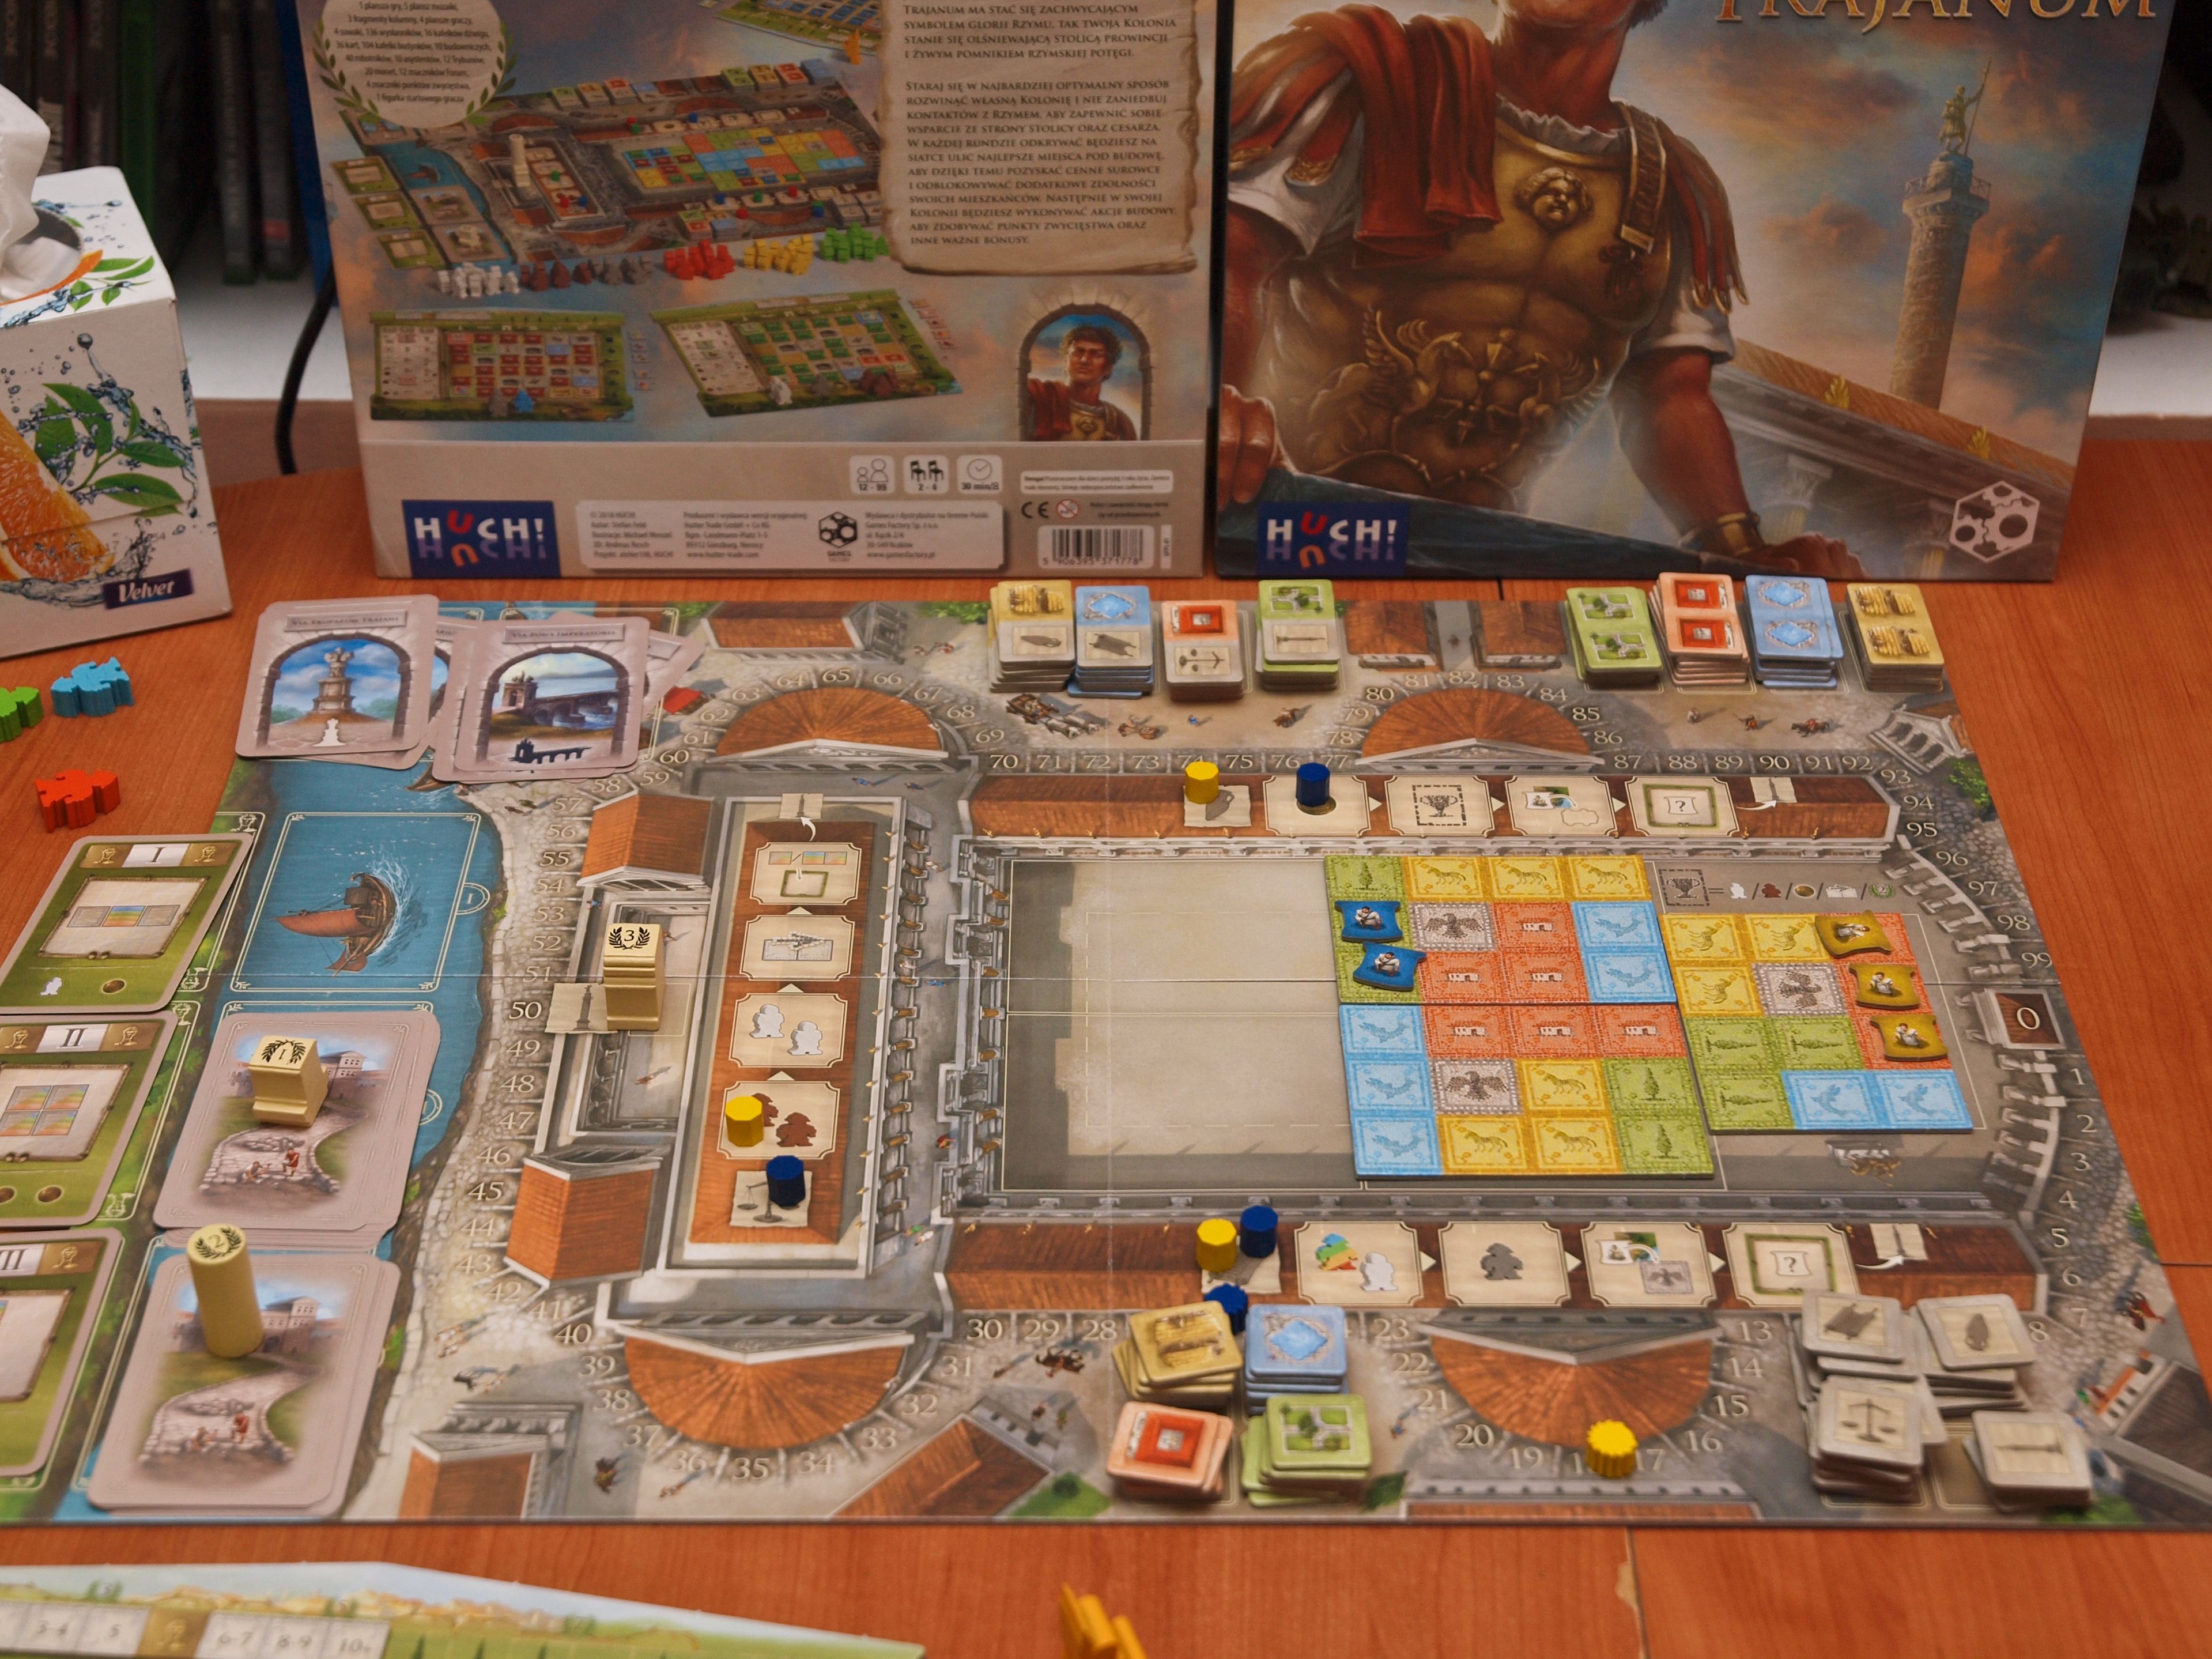 Forum Trajanum, Board Game